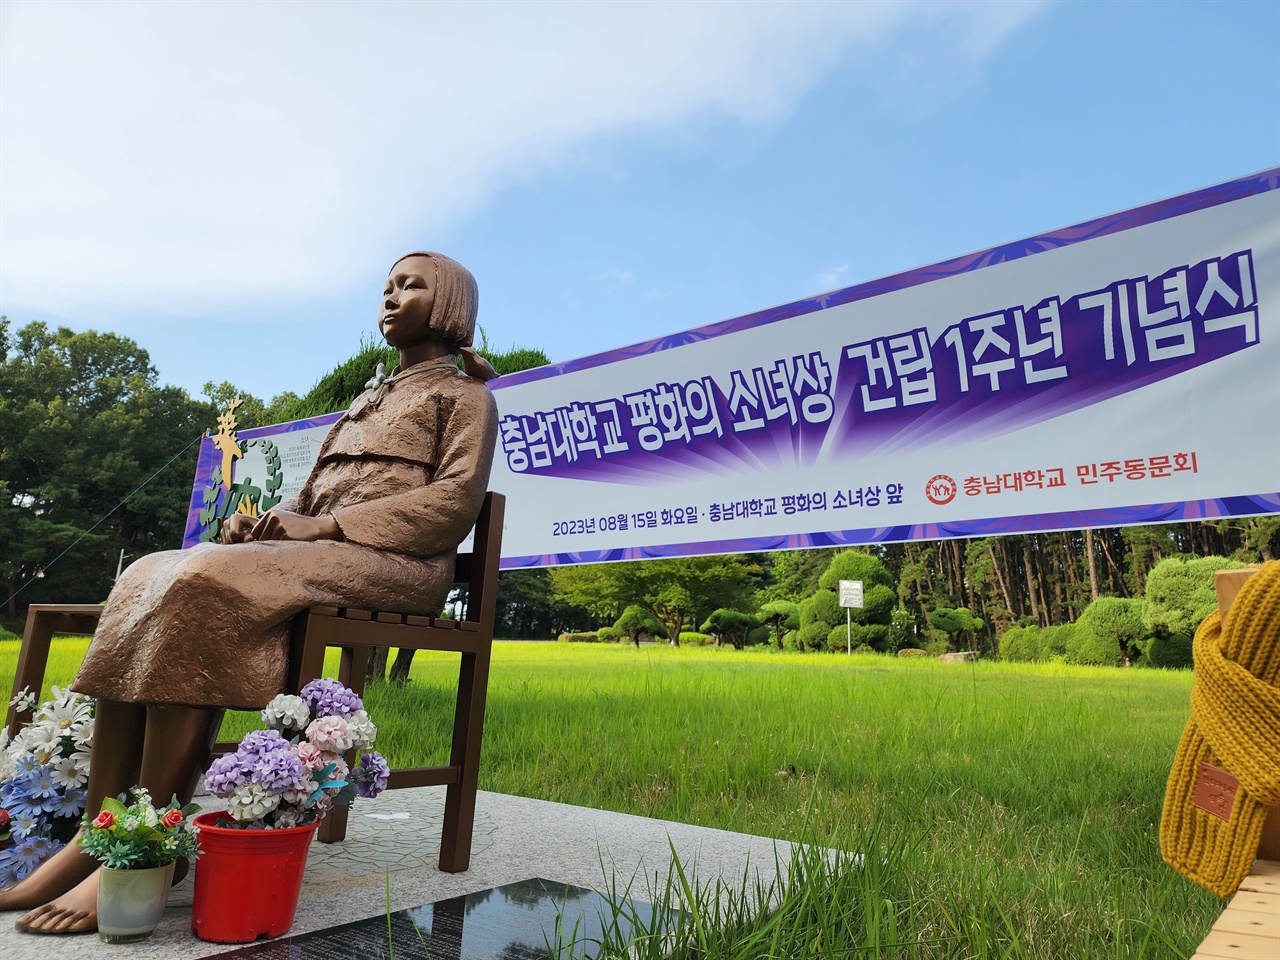 2022년 광복절 밤 기습 건립된 '충남대학교 평화의 소녀상' 건립 1주년 기념식이 진행되었다.